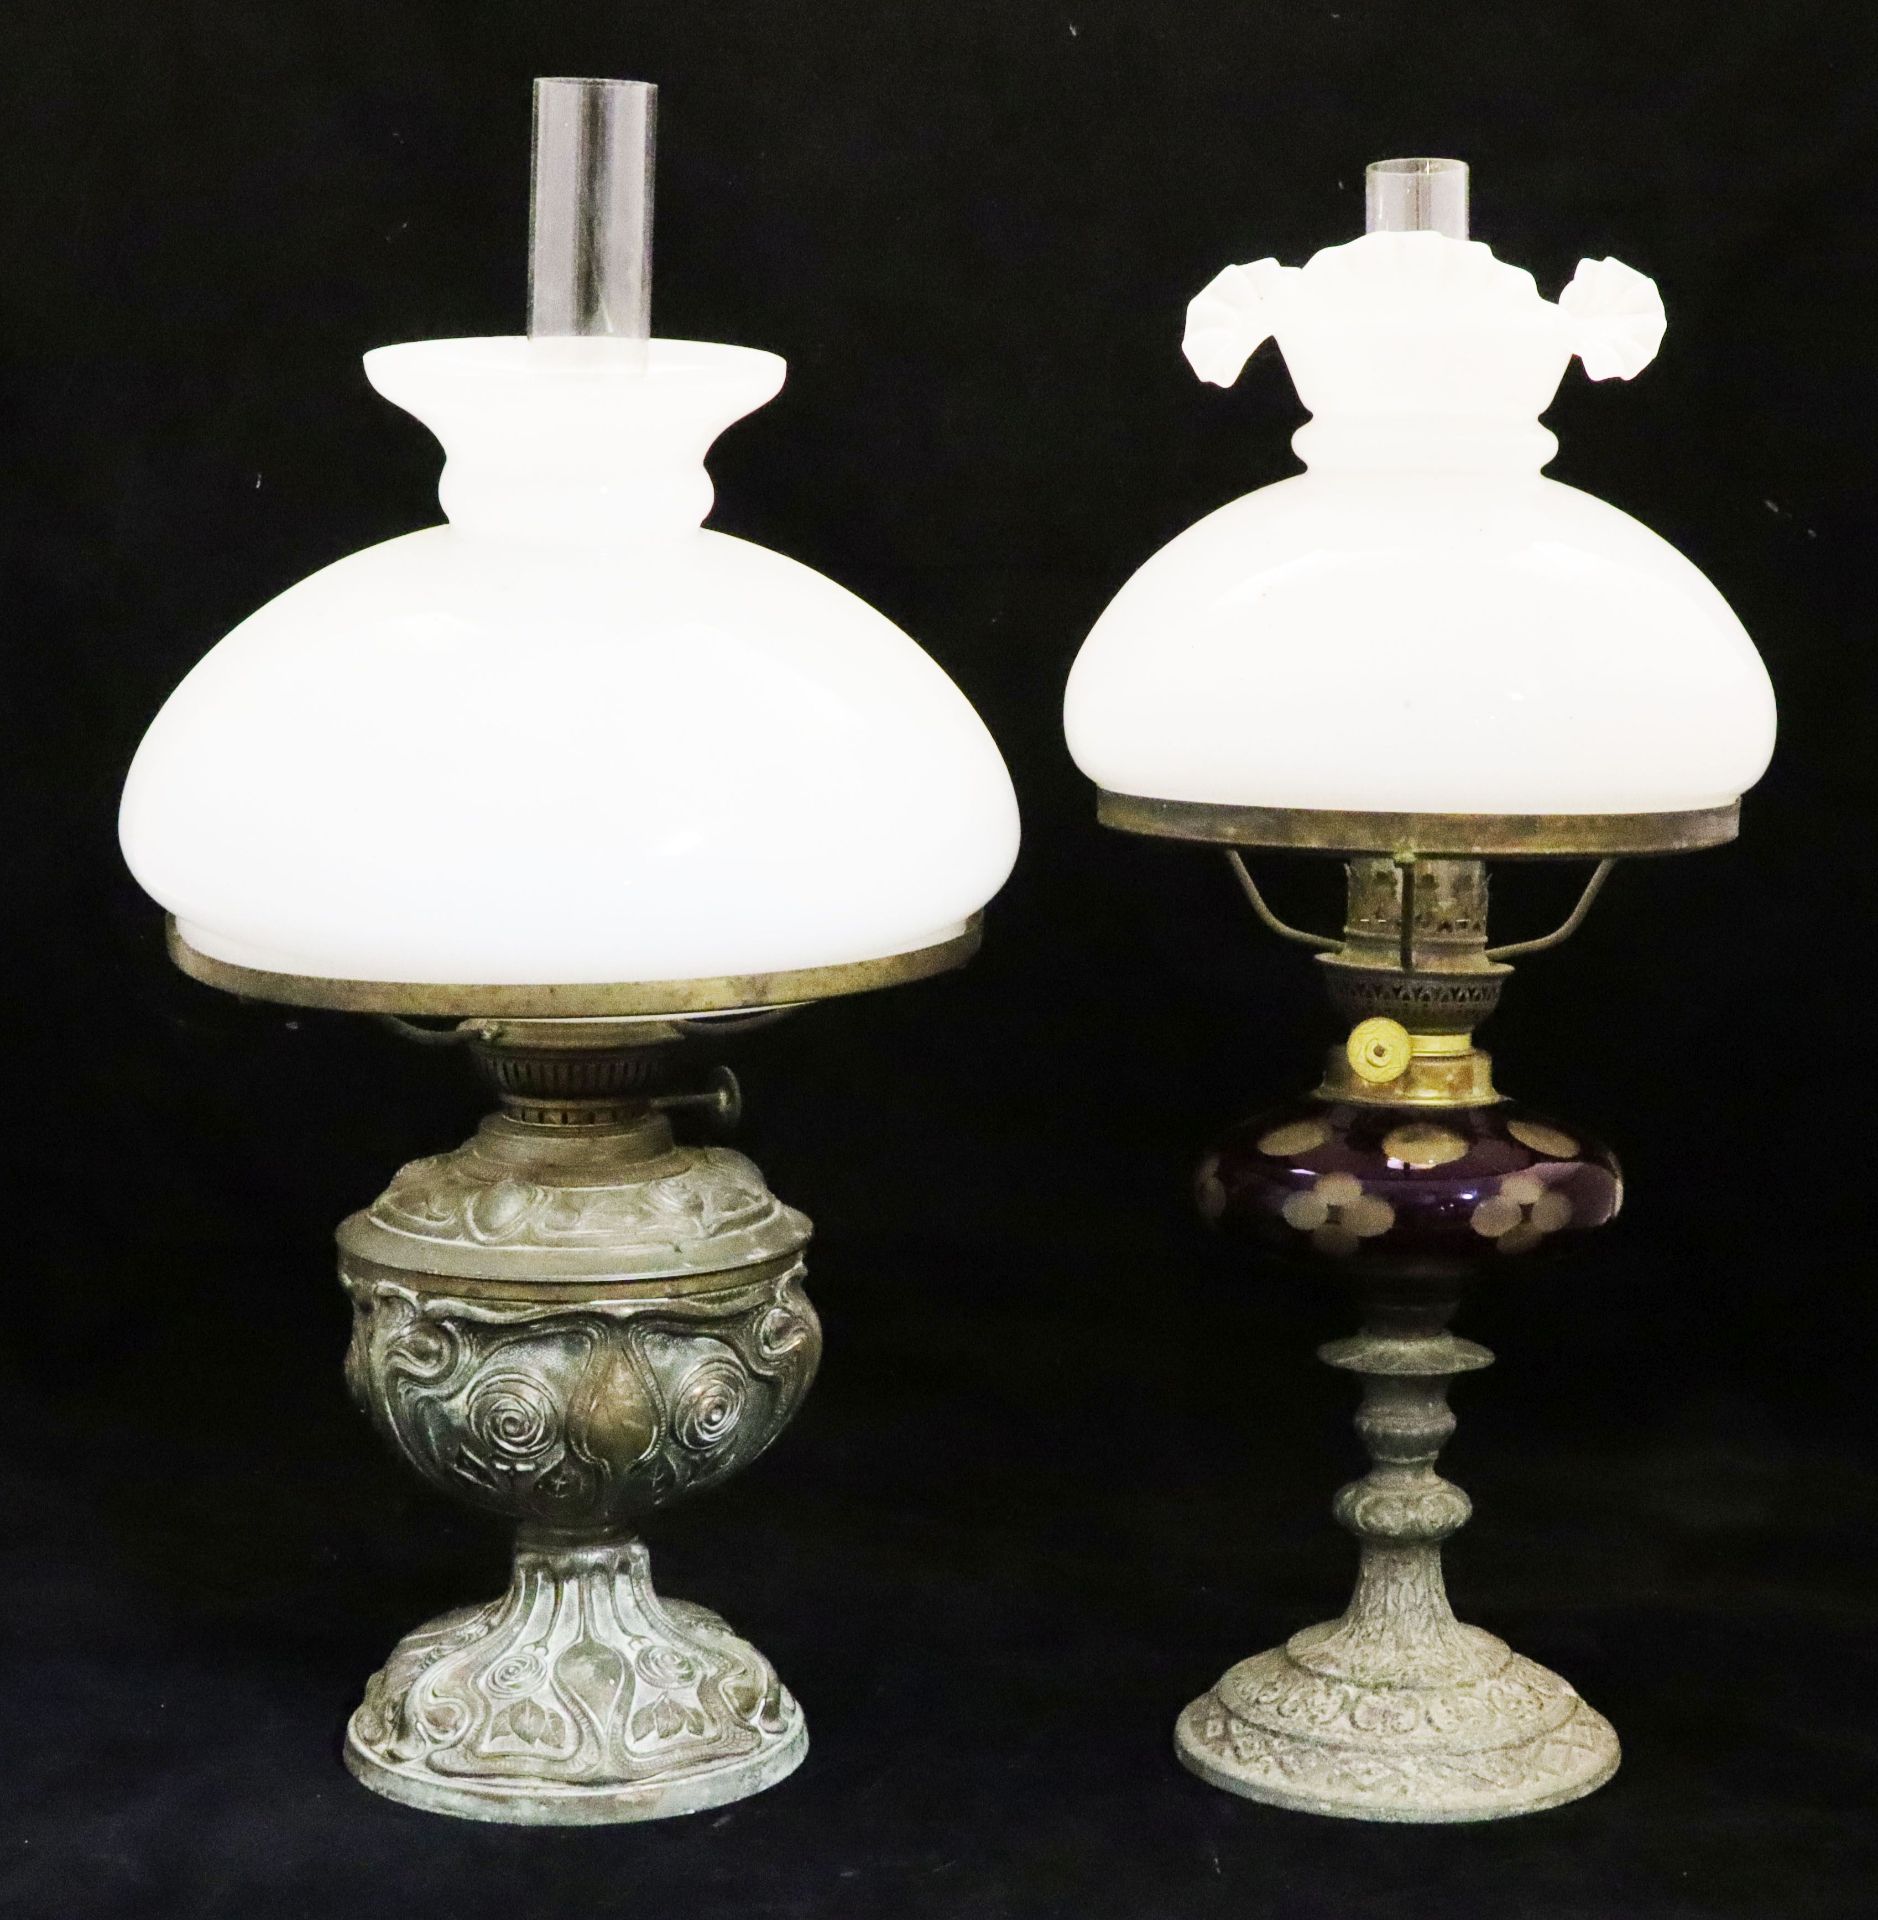 2 Öllampen, Mitte 19. Jh.: reliefiert ornamental gearbeiteter Metallfuß mit weißem Glas-